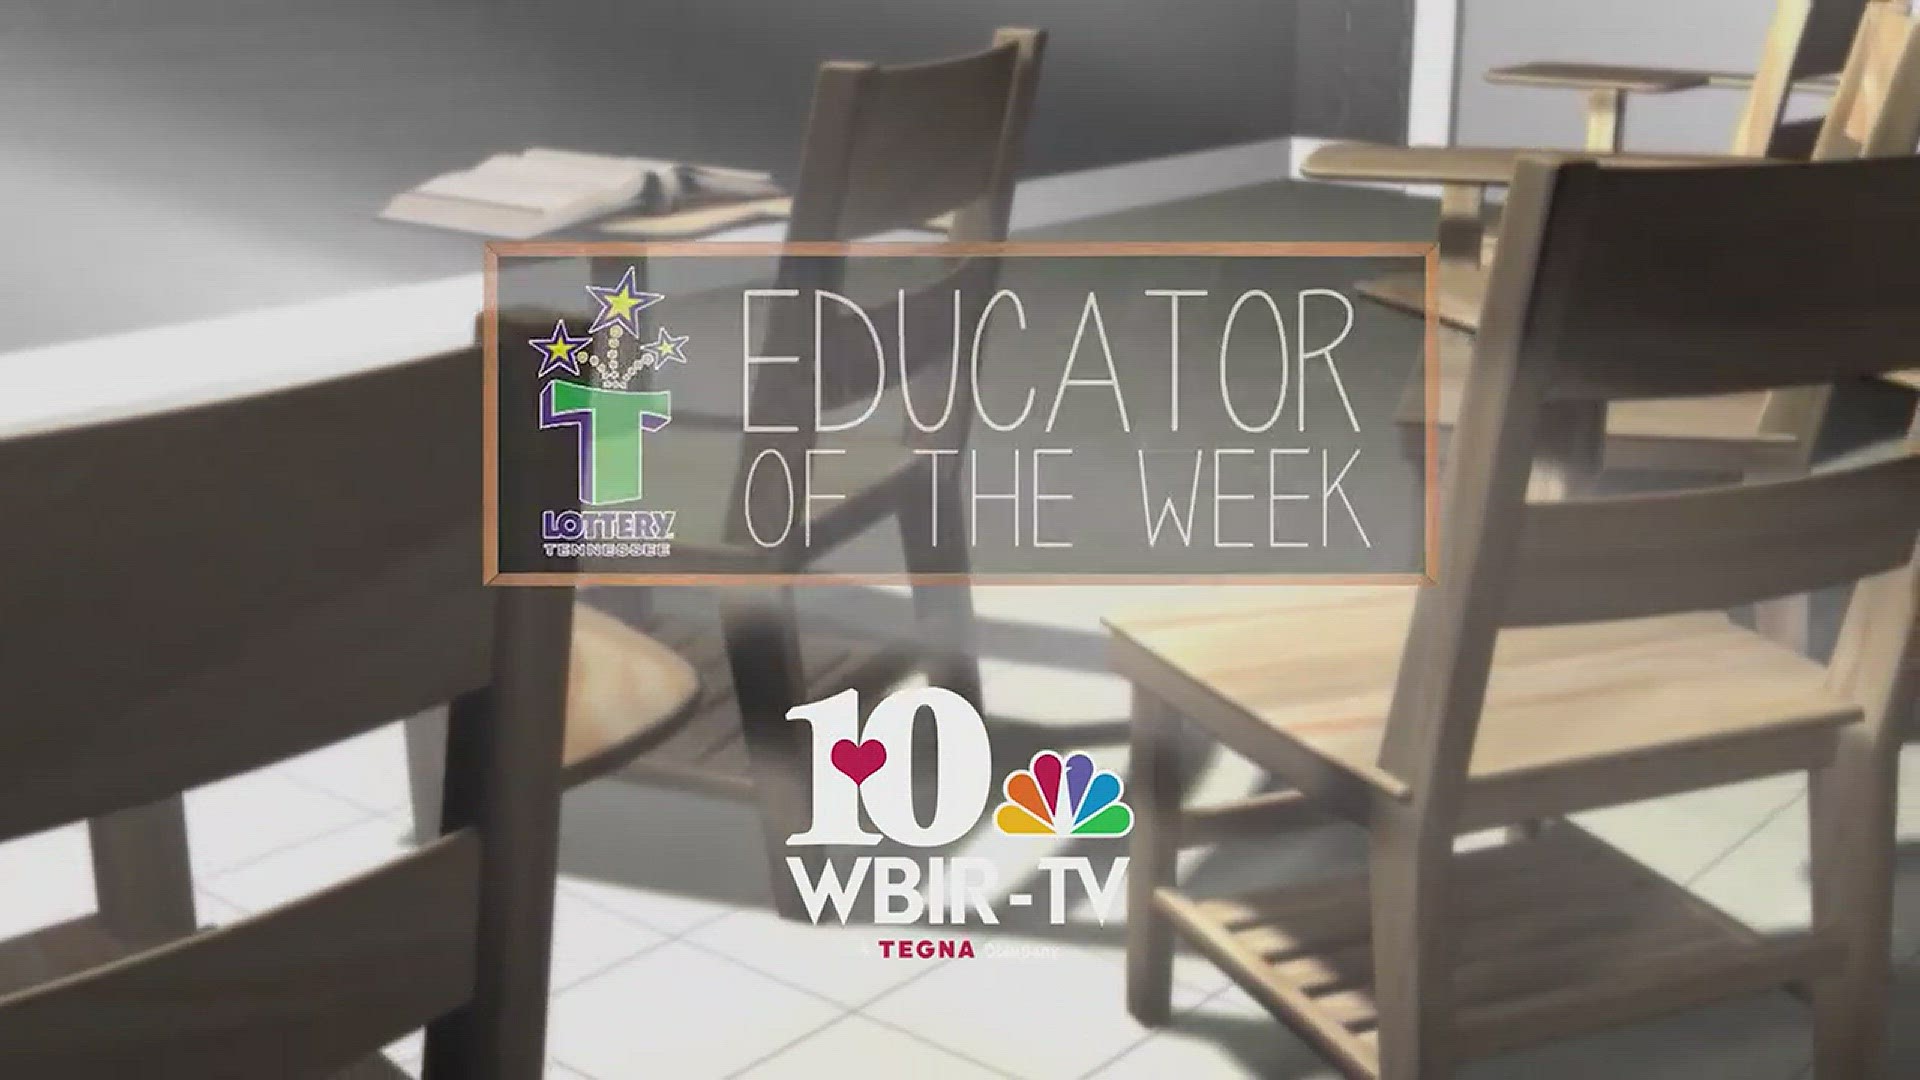 The Educator of the Week 12/18 is Vivian West